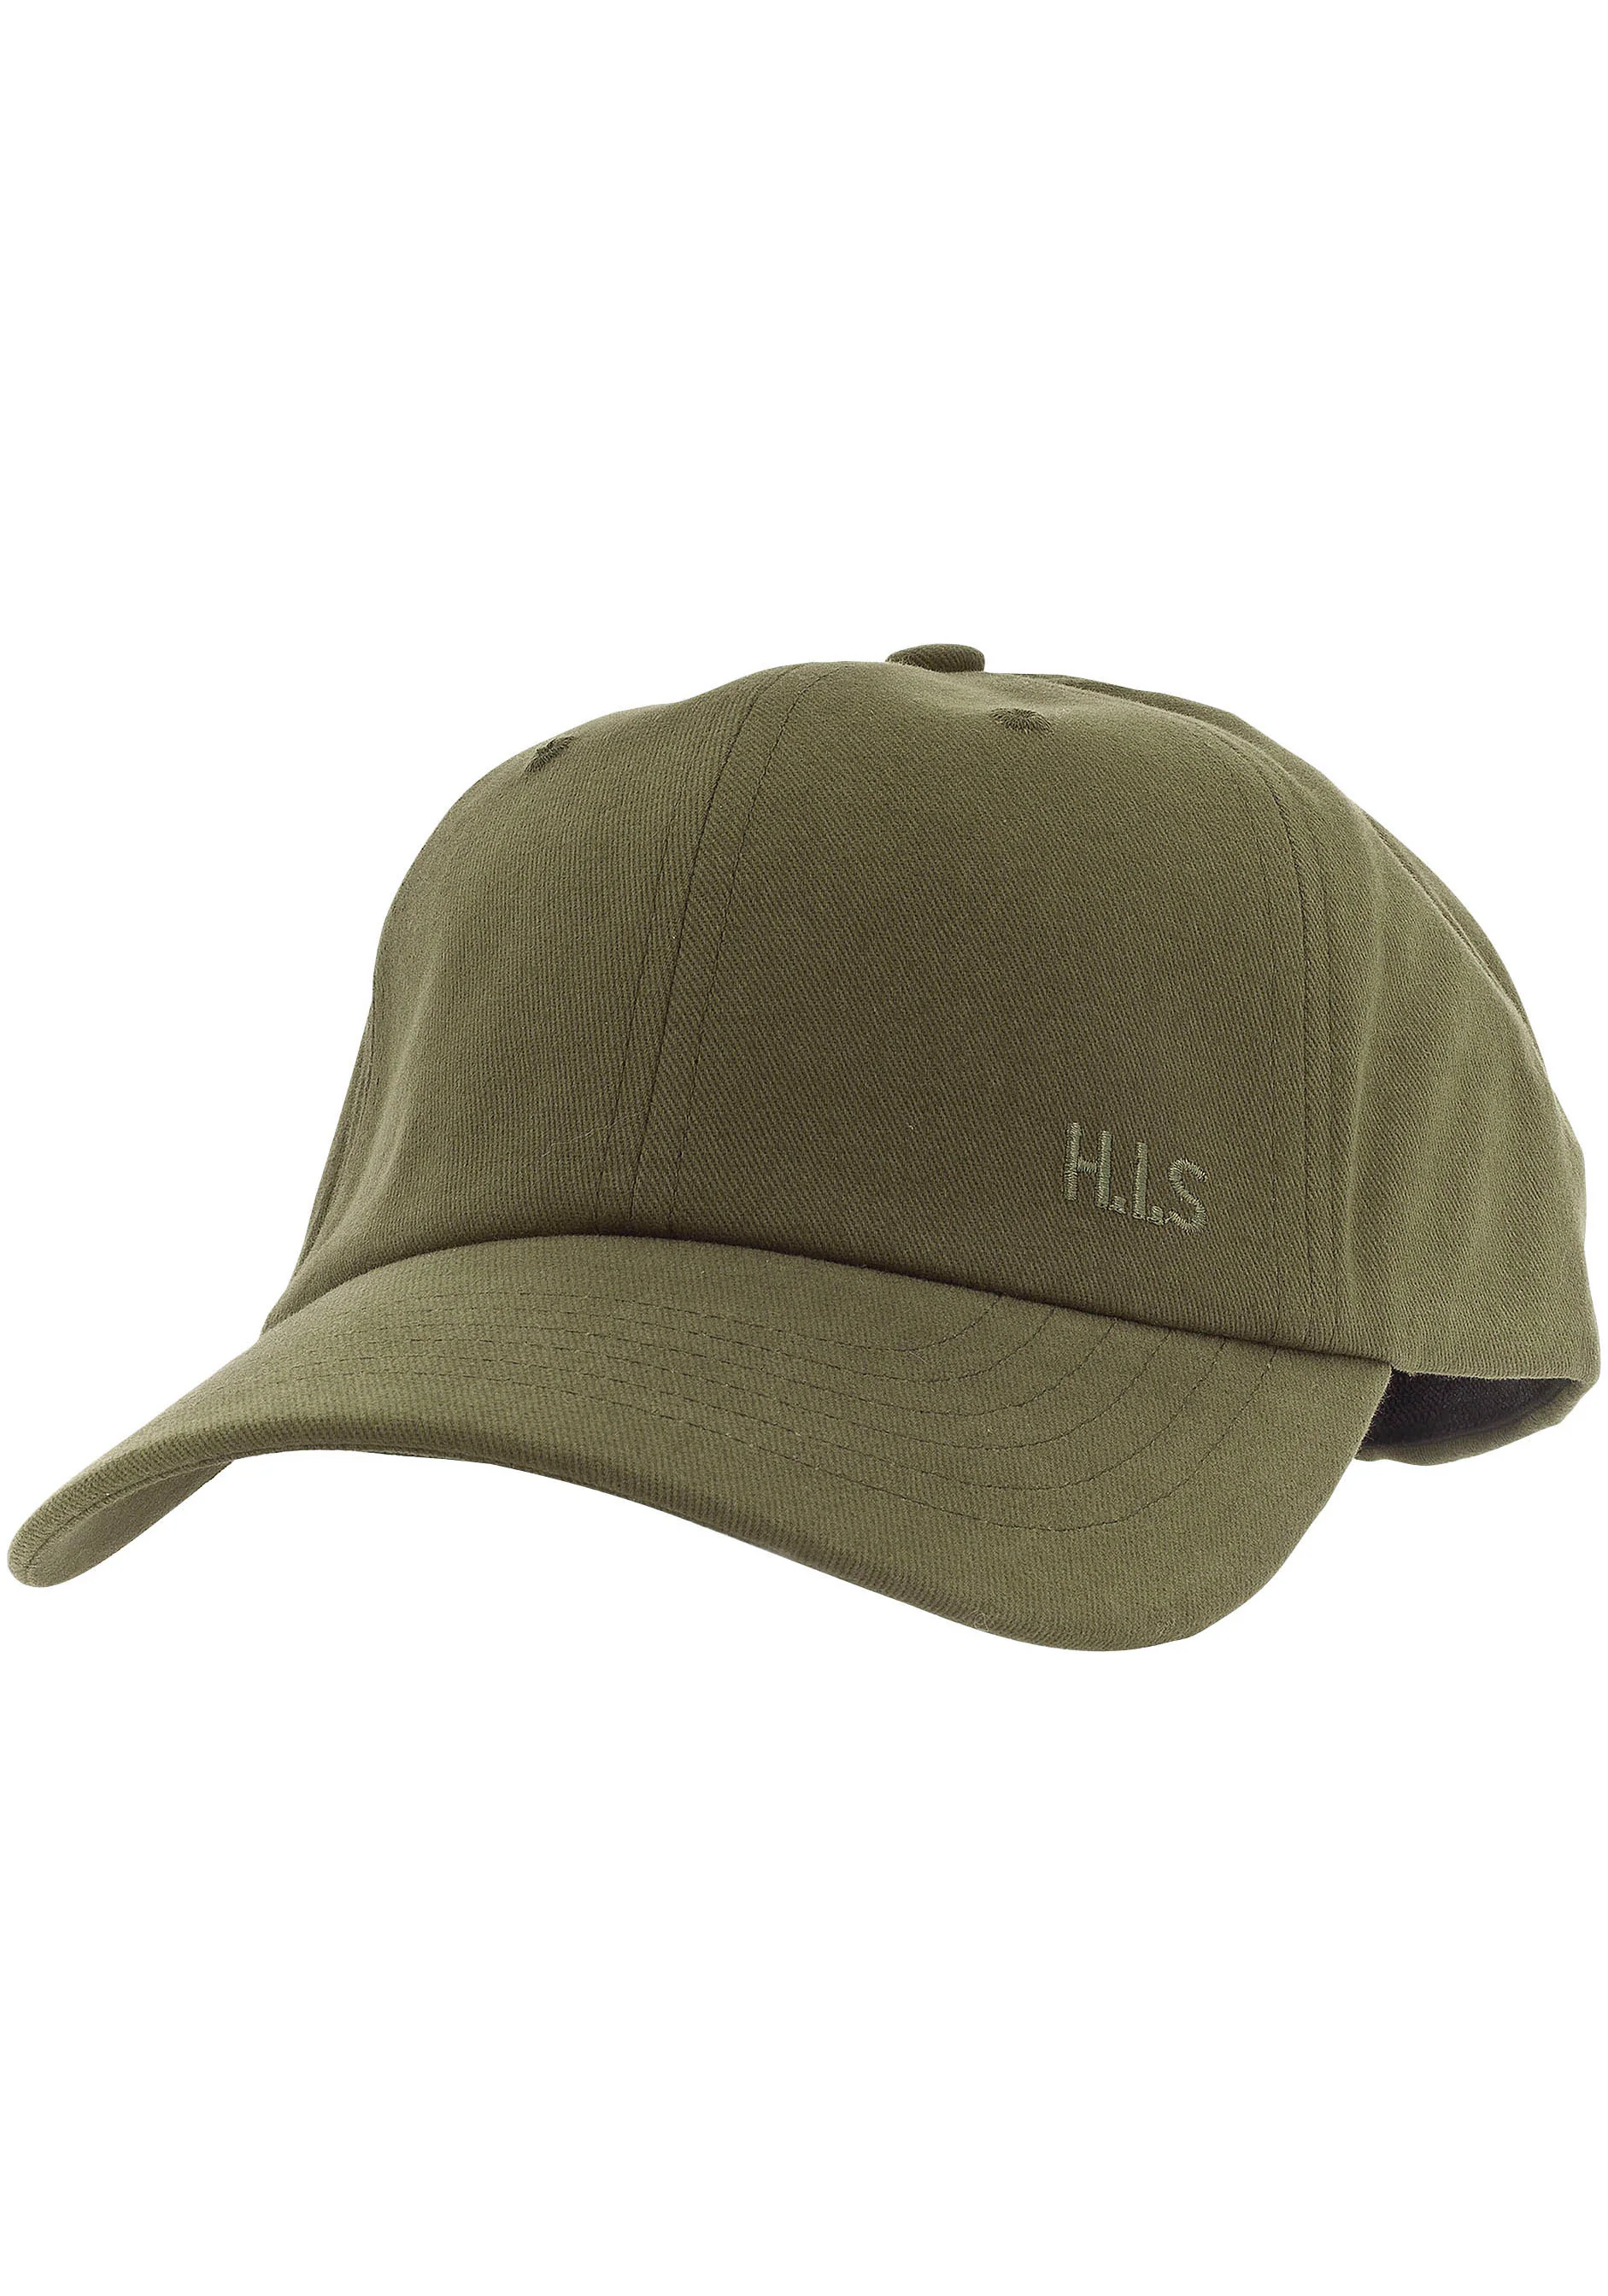 H.I.S Baseball Cap, Baumwollcap mit leichten Verwaschungen und H.I.S. Stick günstig online kaufen